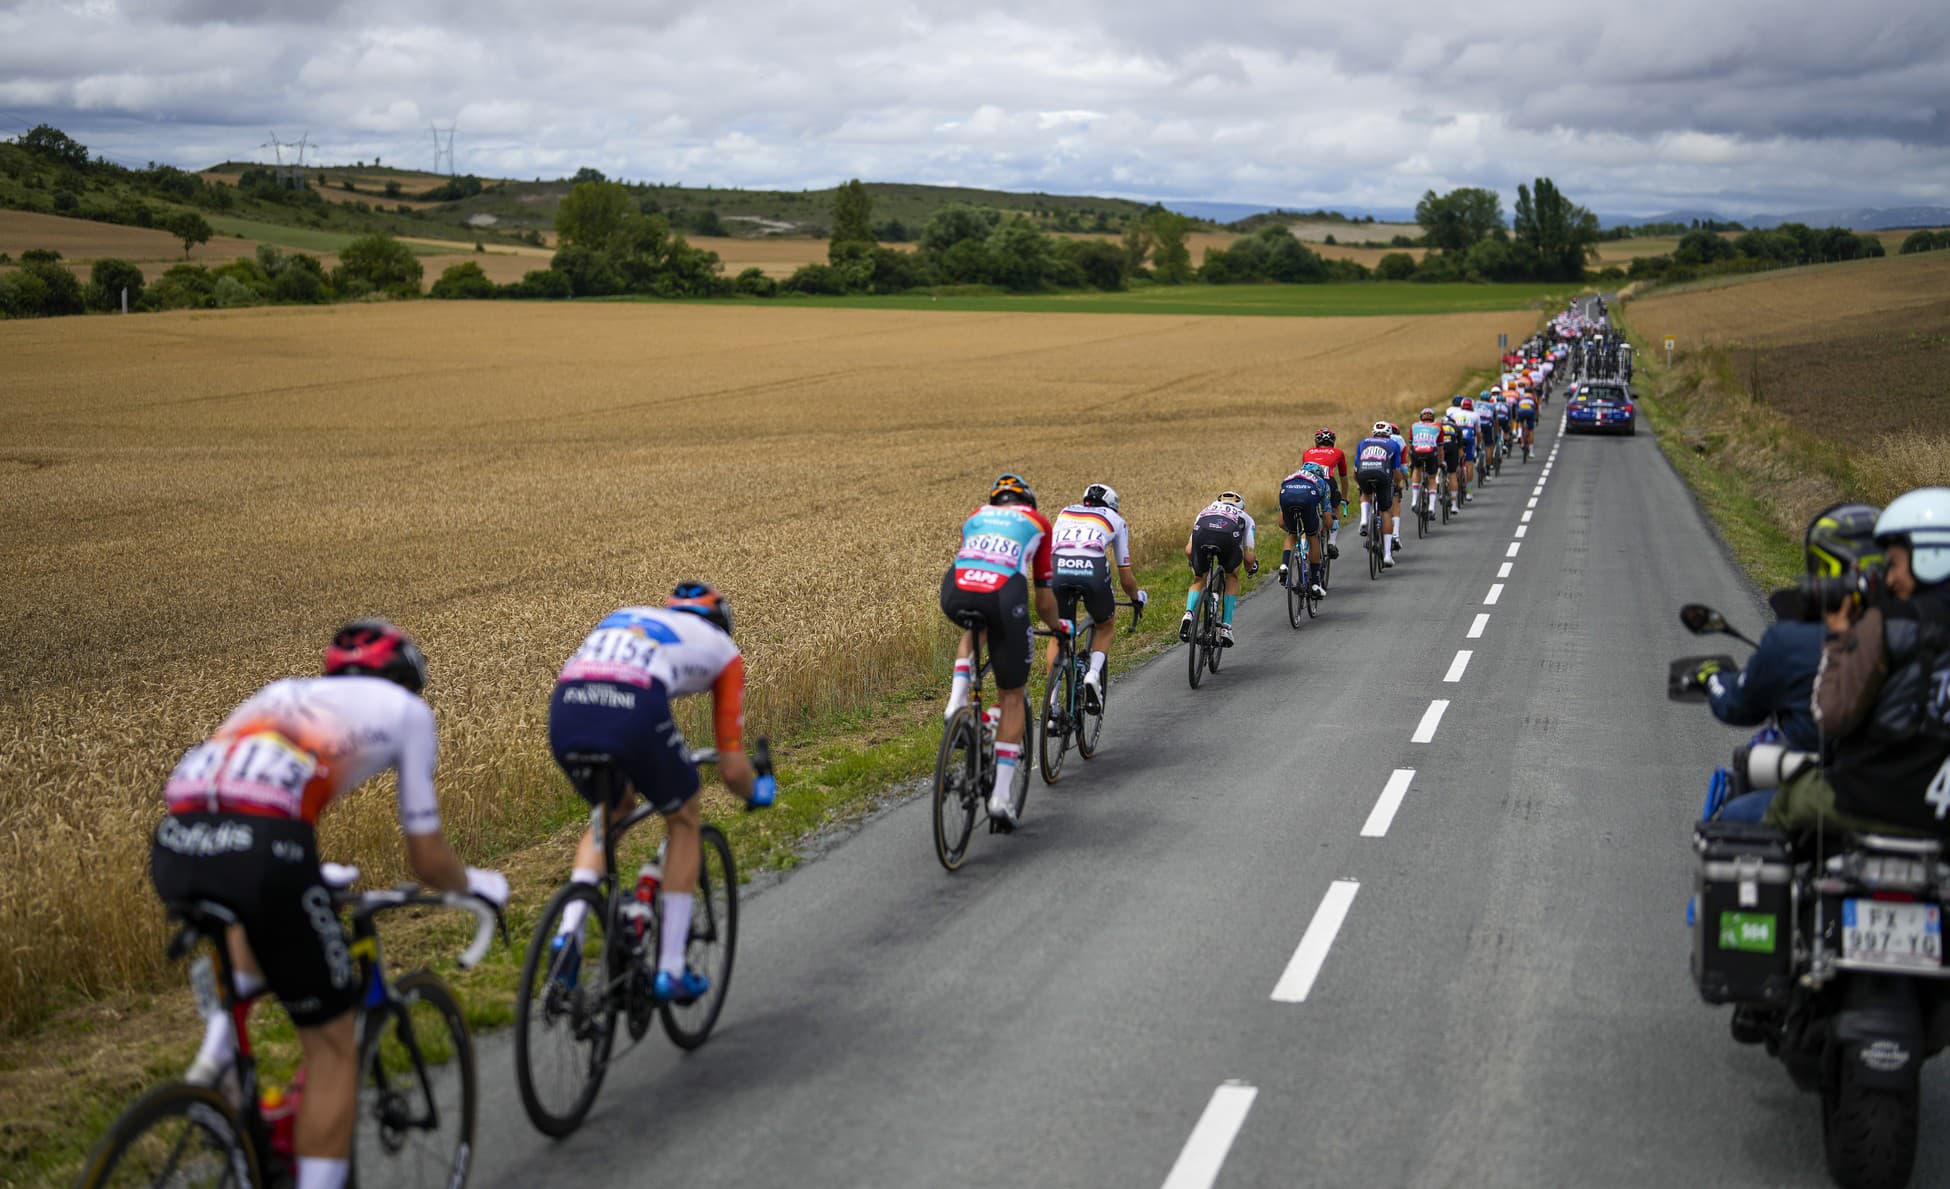 Les stars du Tour de France sont furieuses : à cause des imbéciles, leur santé était en jeu